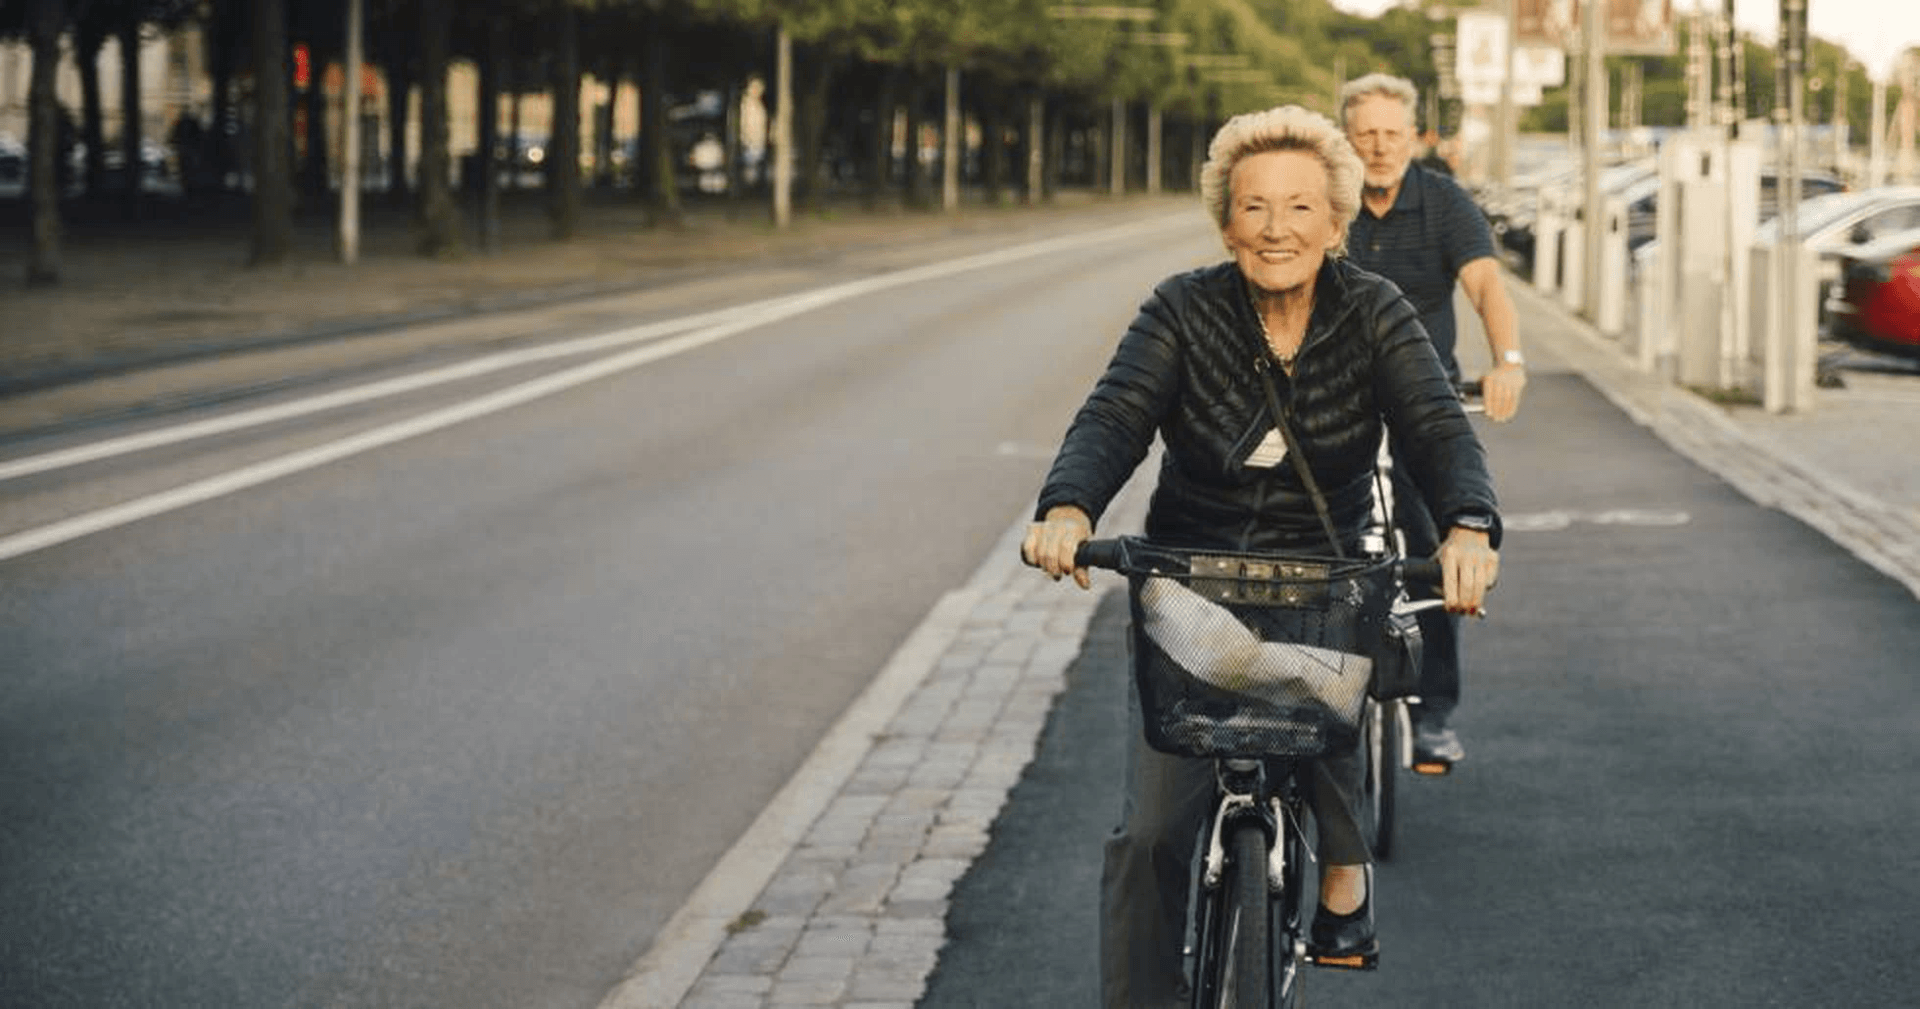 maturis andando de bicicleta felizes. a mulher está de preto e segue com a bicicleta na frente. o homem, que vai atrás, também está de preto.